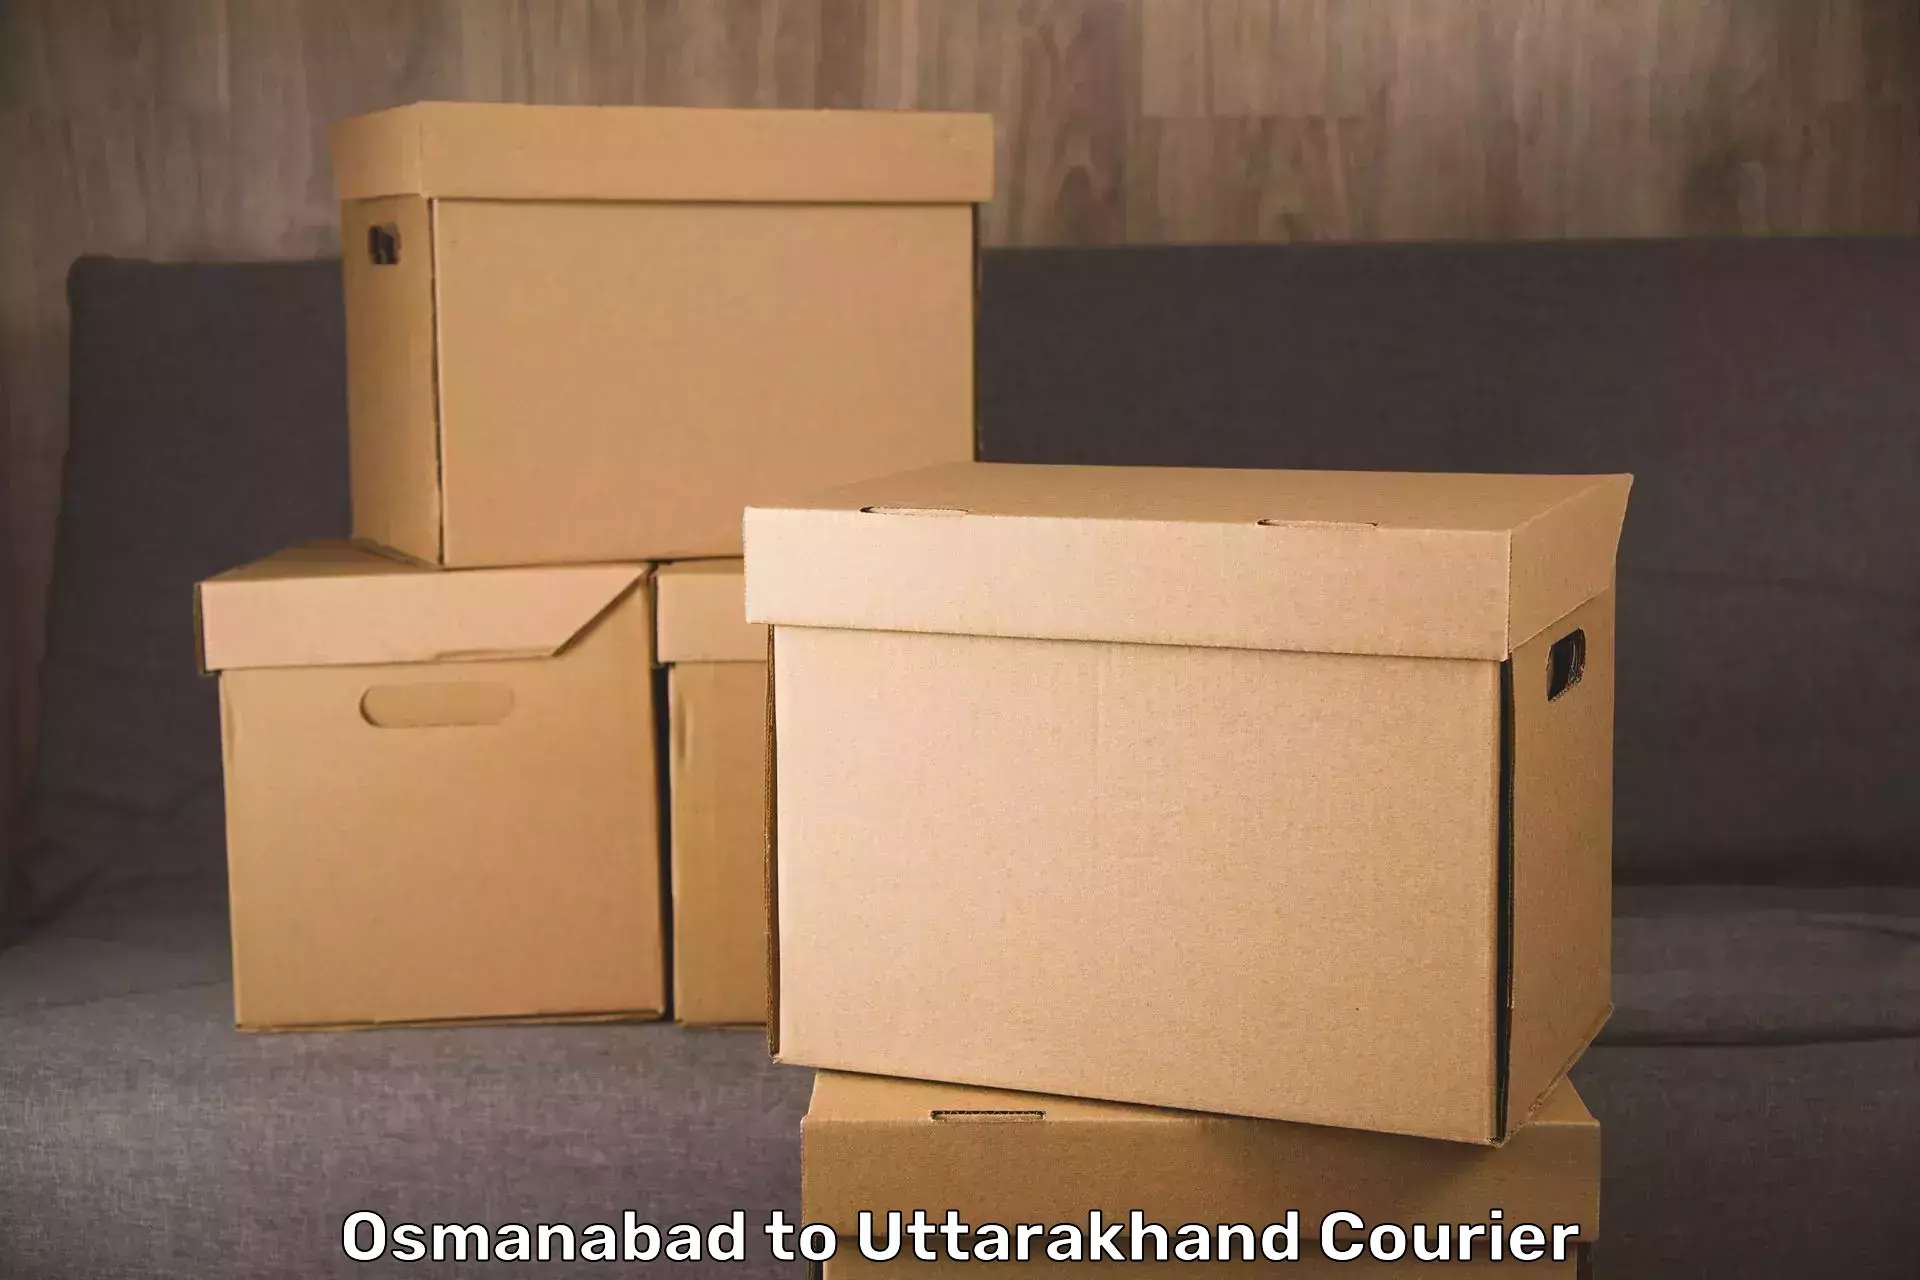 Luggage delivery system Osmanabad to Uttarakhand